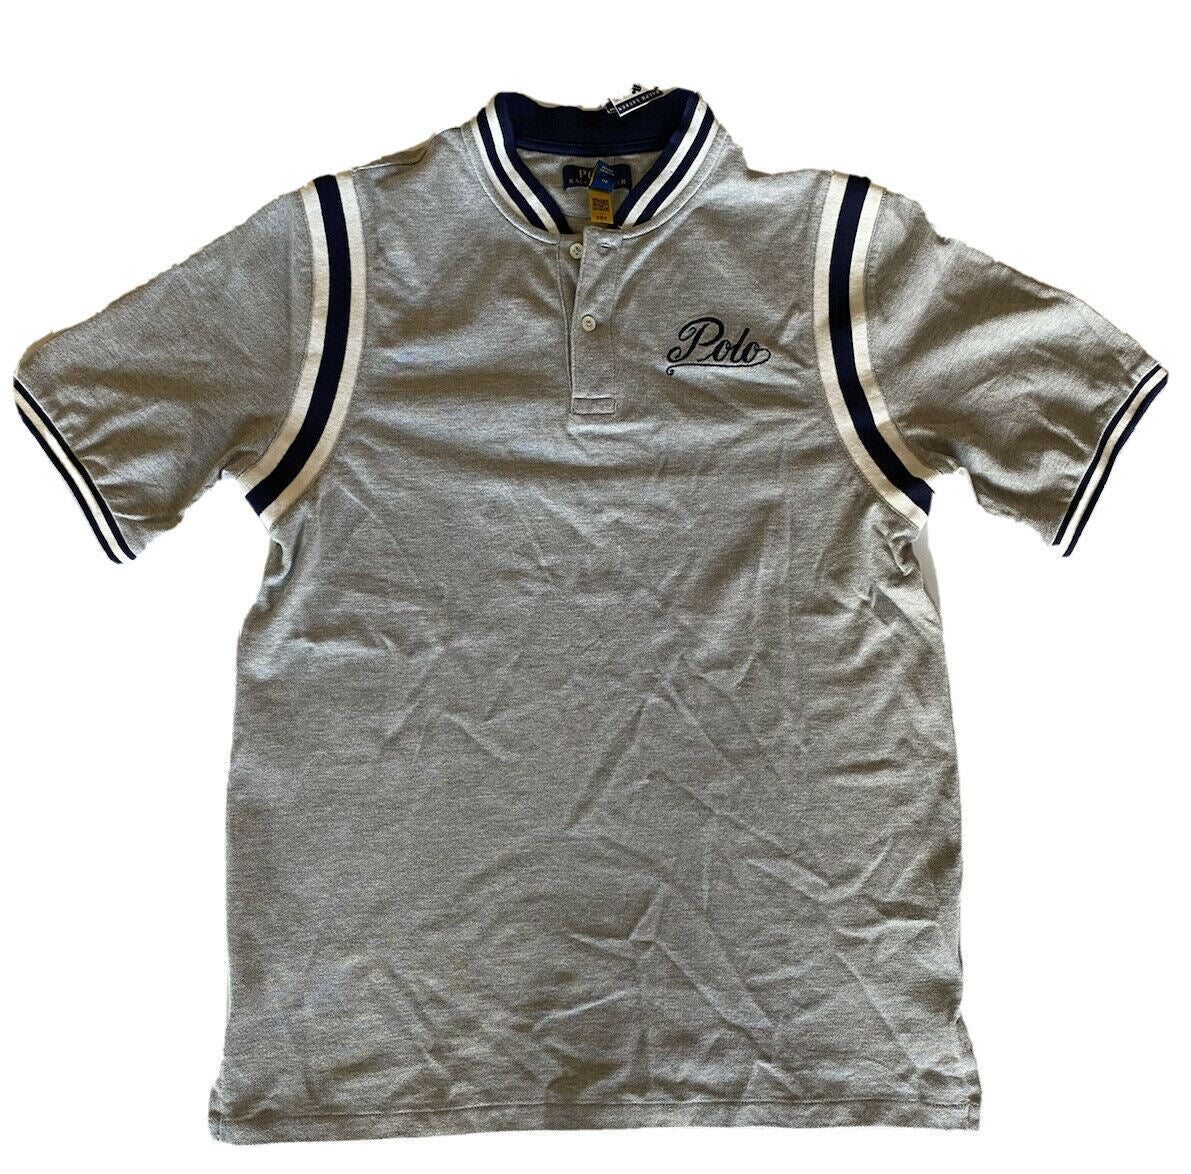 NWT $79.99 Polo Ralph Lauren Tiger Boy's Polo Tee Size M (10-12)